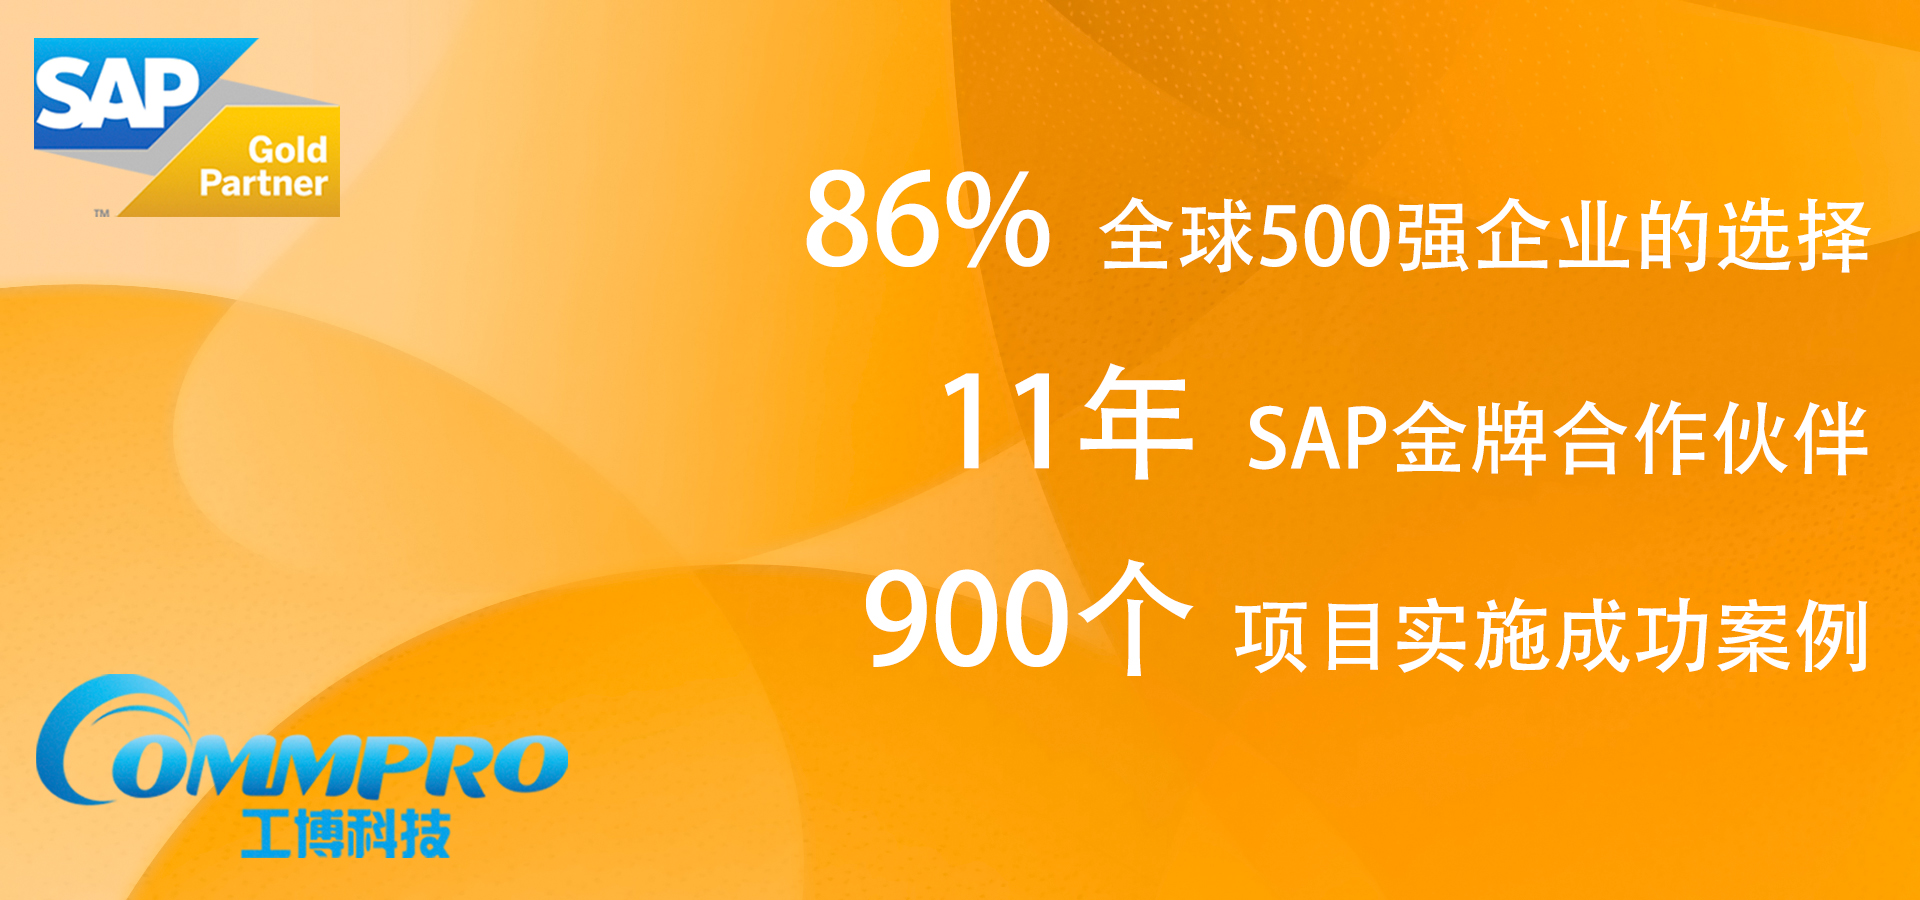 杭州SAP,杭州SAP公司,杭州SAP代理商,杭州SAP实施